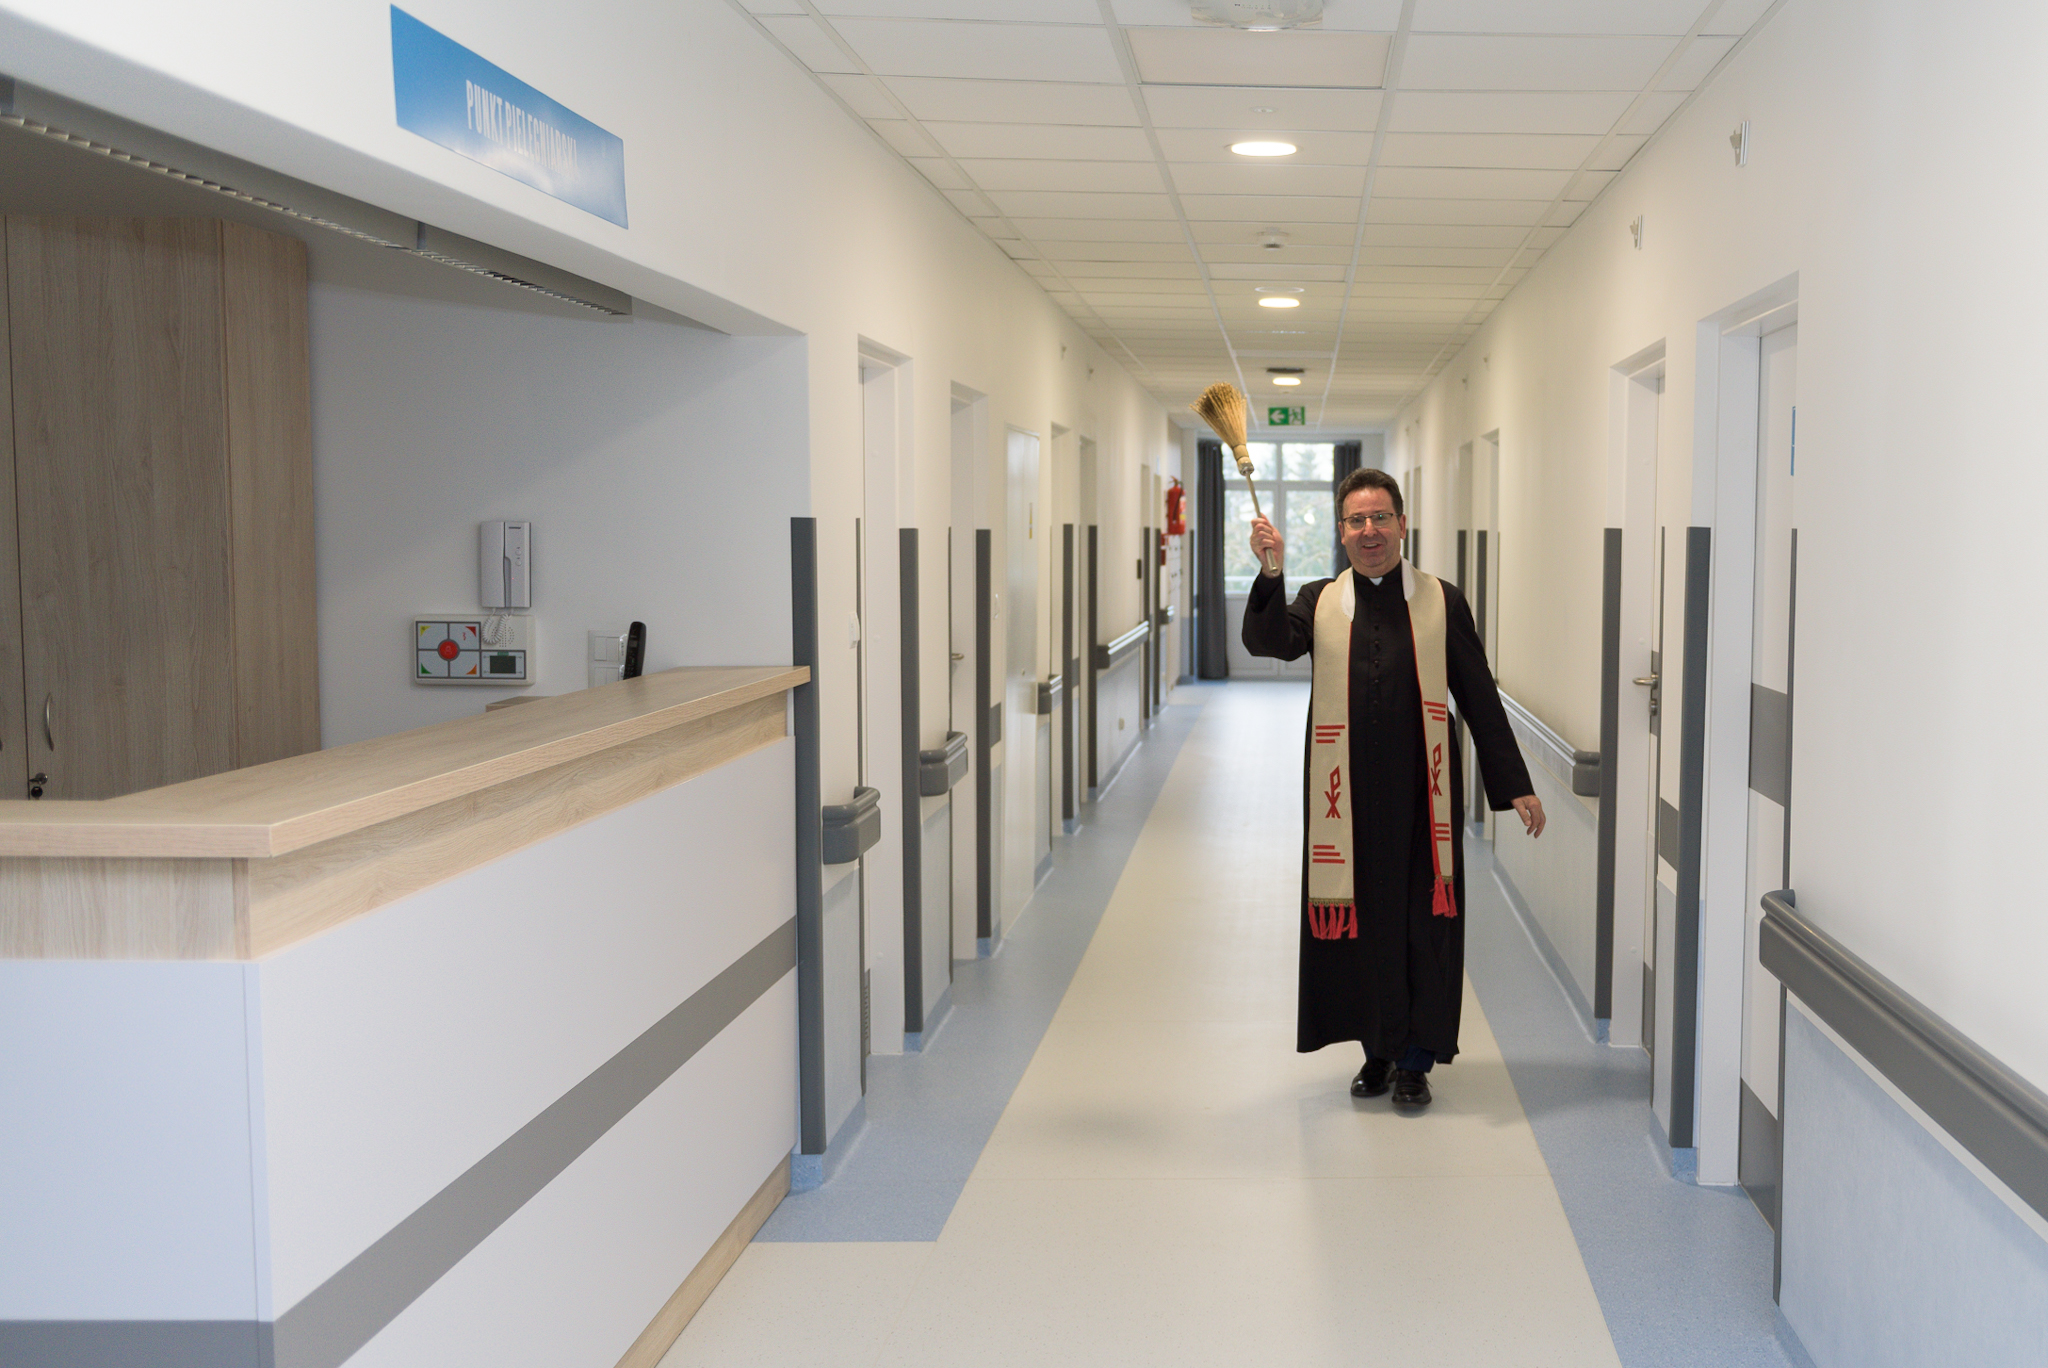 Widok na punkt pielęgniarski oraz korytarz przez który idzie ksiądz i święci wodą święconą kolejne pomieszczenia.